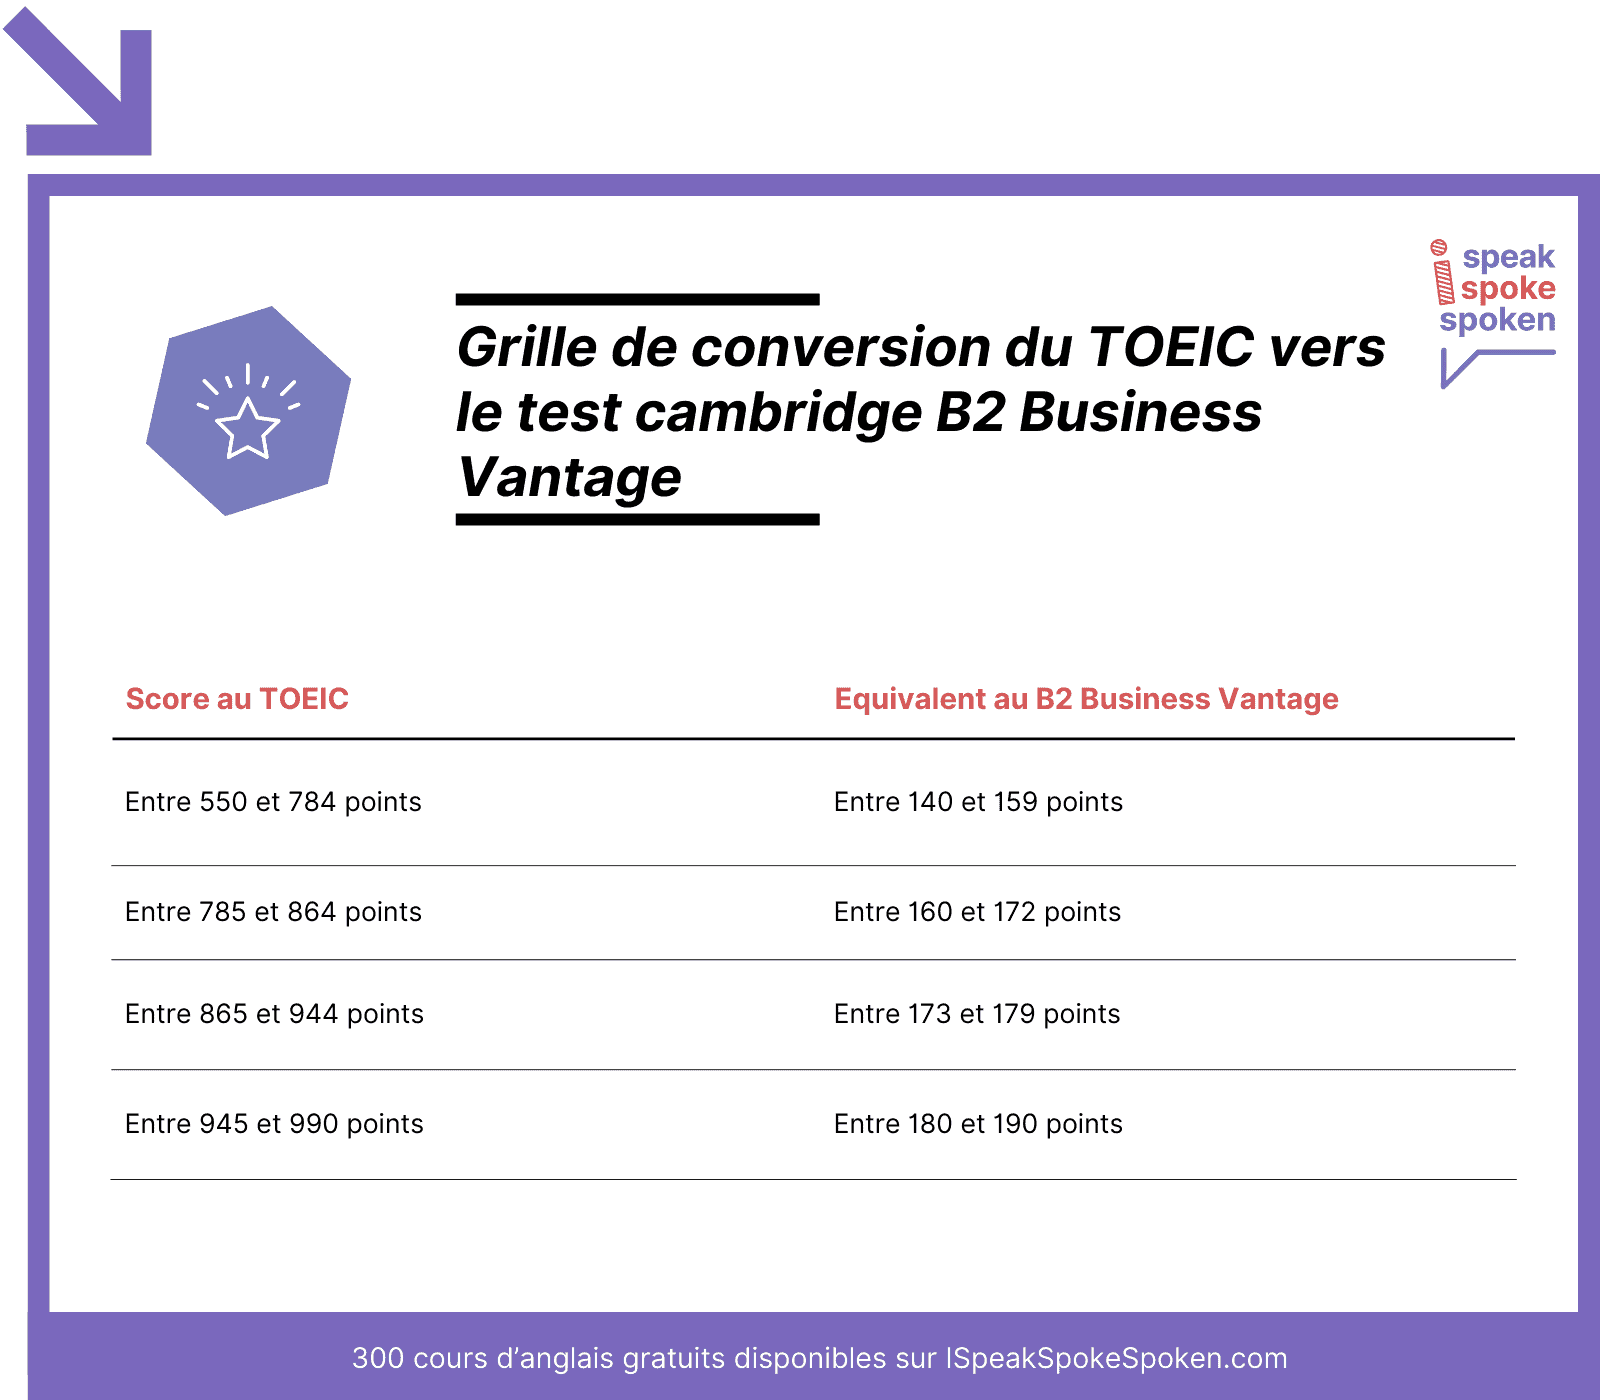 Grille de conversion du TOEIC vers le test B2 Business Vantage